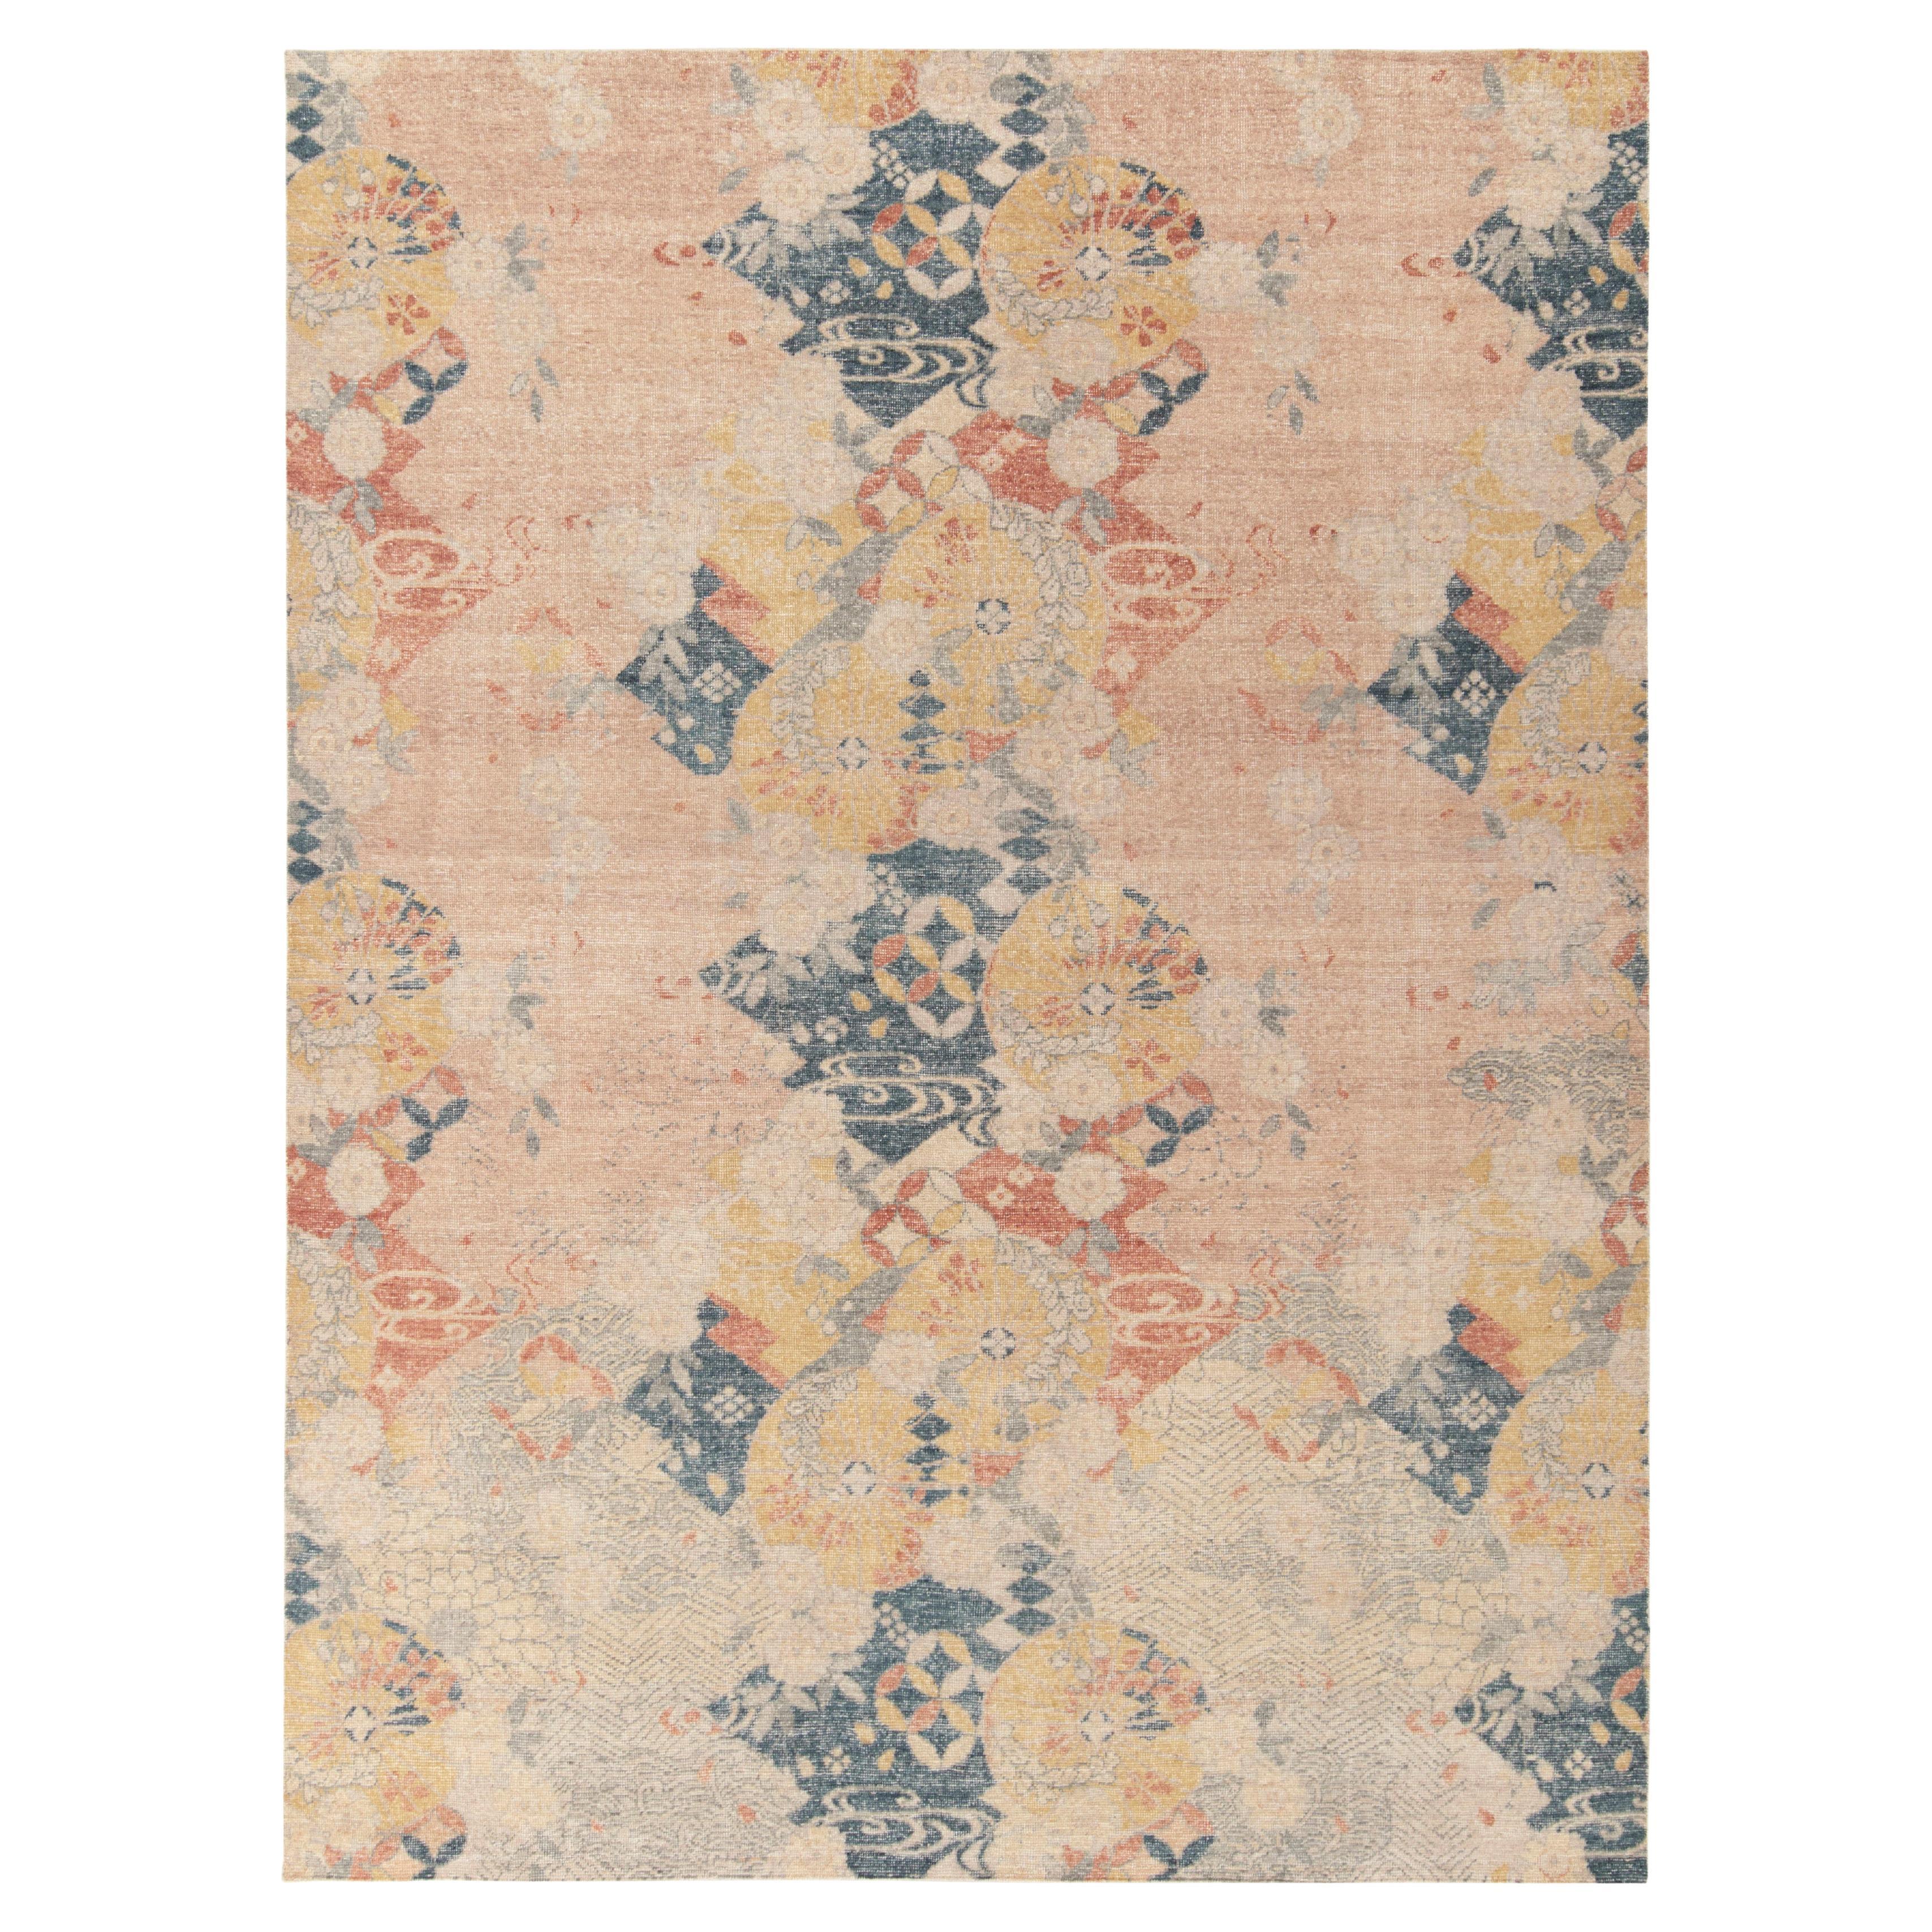 Teppich & Kelim-Teppich im japanischen Deko-Stil mit blauem, rosa Allover-Muster